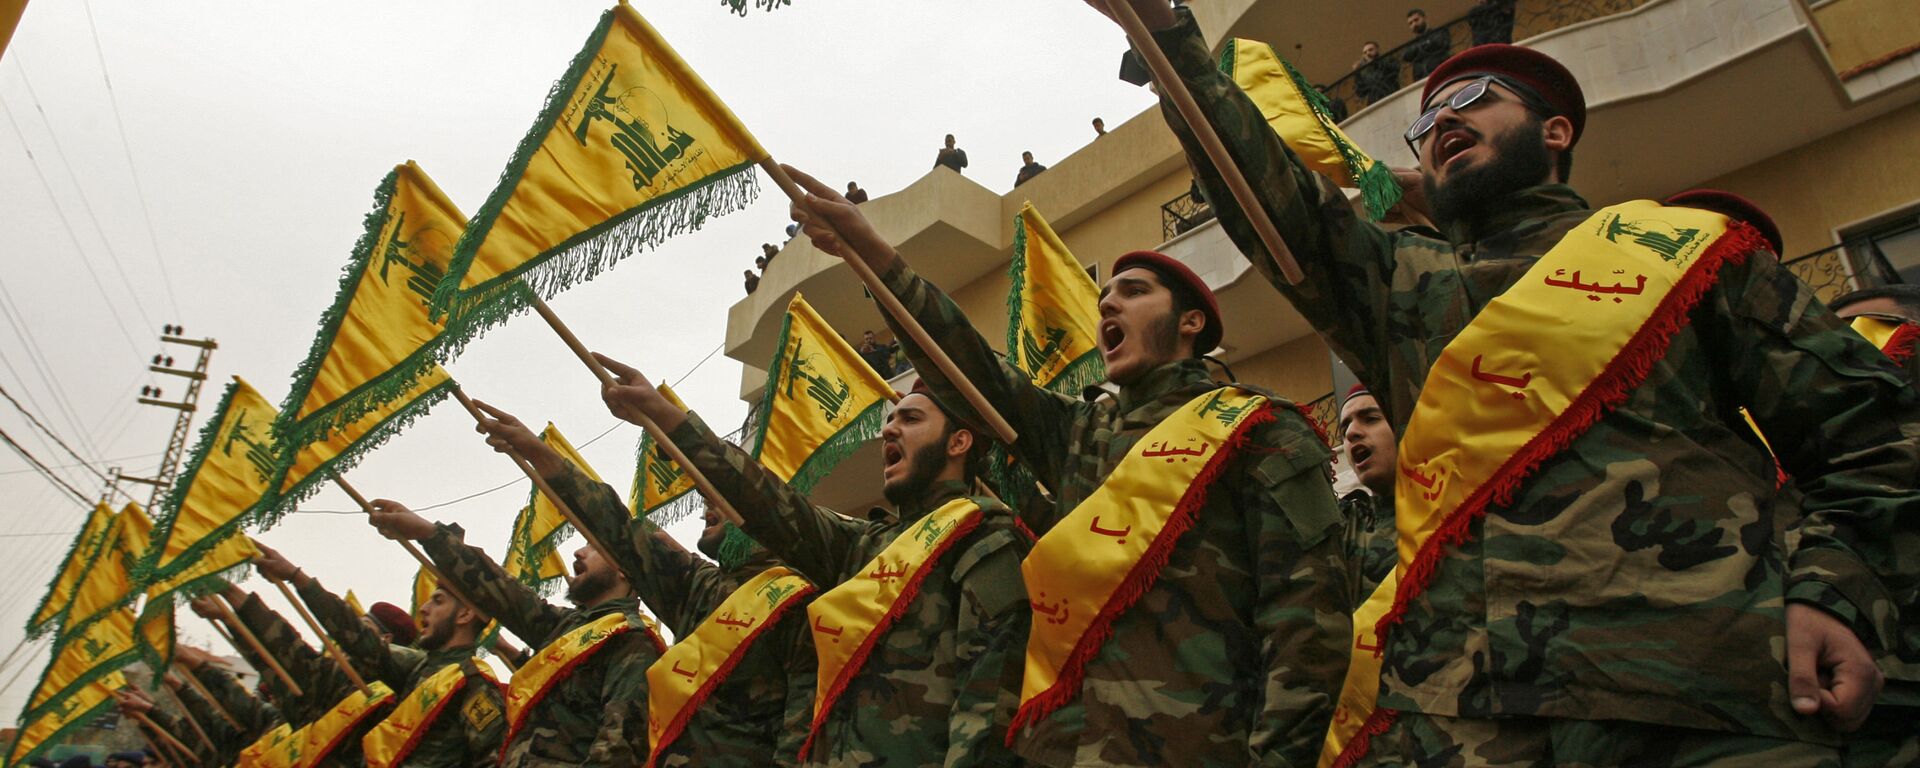 Тајна успеха Хезболаха несумњиво лежи у подршци коју добија од Ирана. Управо су Чувари Исламске револуције били ти који су помогли оснивање покрета, обуку војника и њихово наоружавање. Управо новцем Техерана Хезболах данас гради болнице и школе по Либану које су јефтиније од државних и даје стипендије студентима. Најнижи сталеж је његова највећа потпора. Покрет има своју телевизију, радио, хотеле, грађевинске компаније, итд. - Sputnik Србија, 1920, 26.05.2021